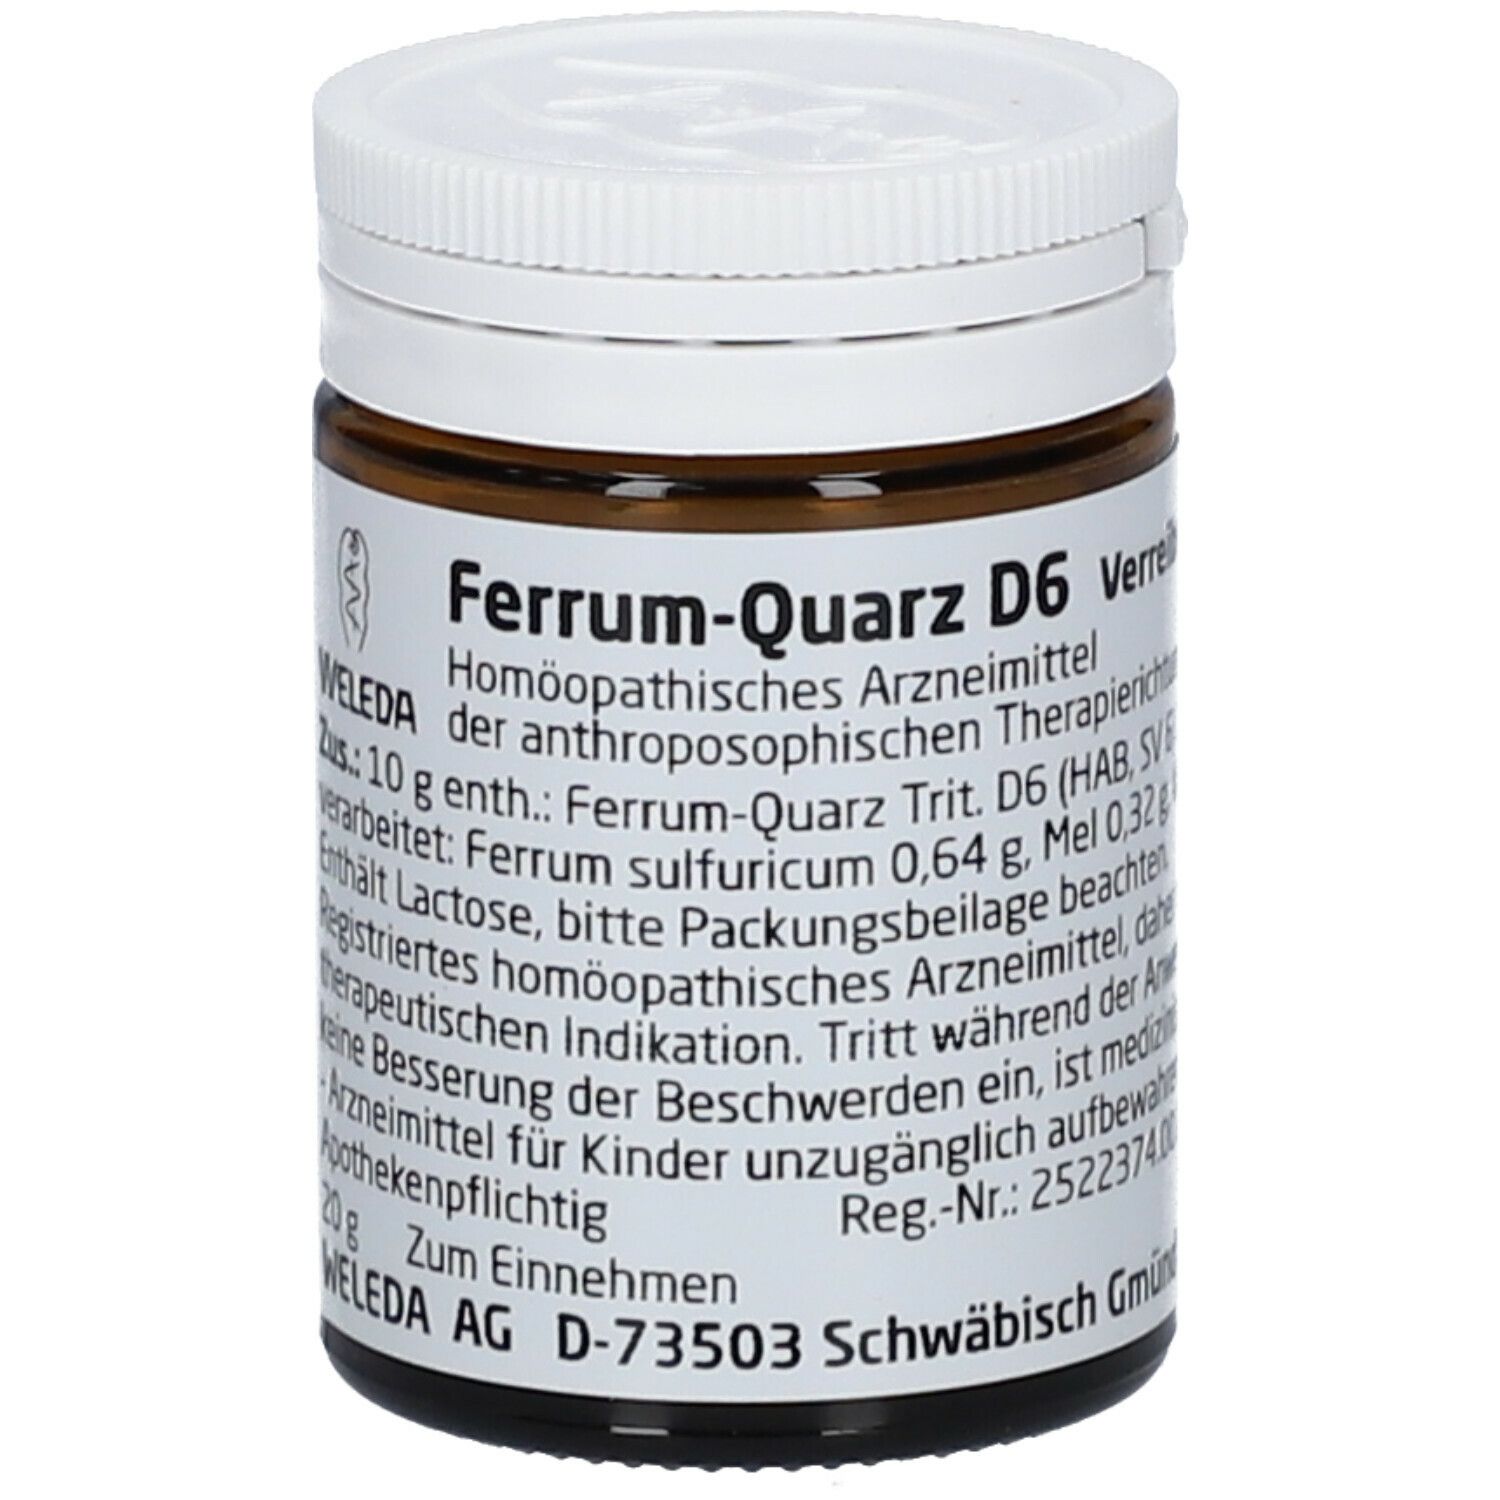 Ferrum-Quarz D6 Trituration